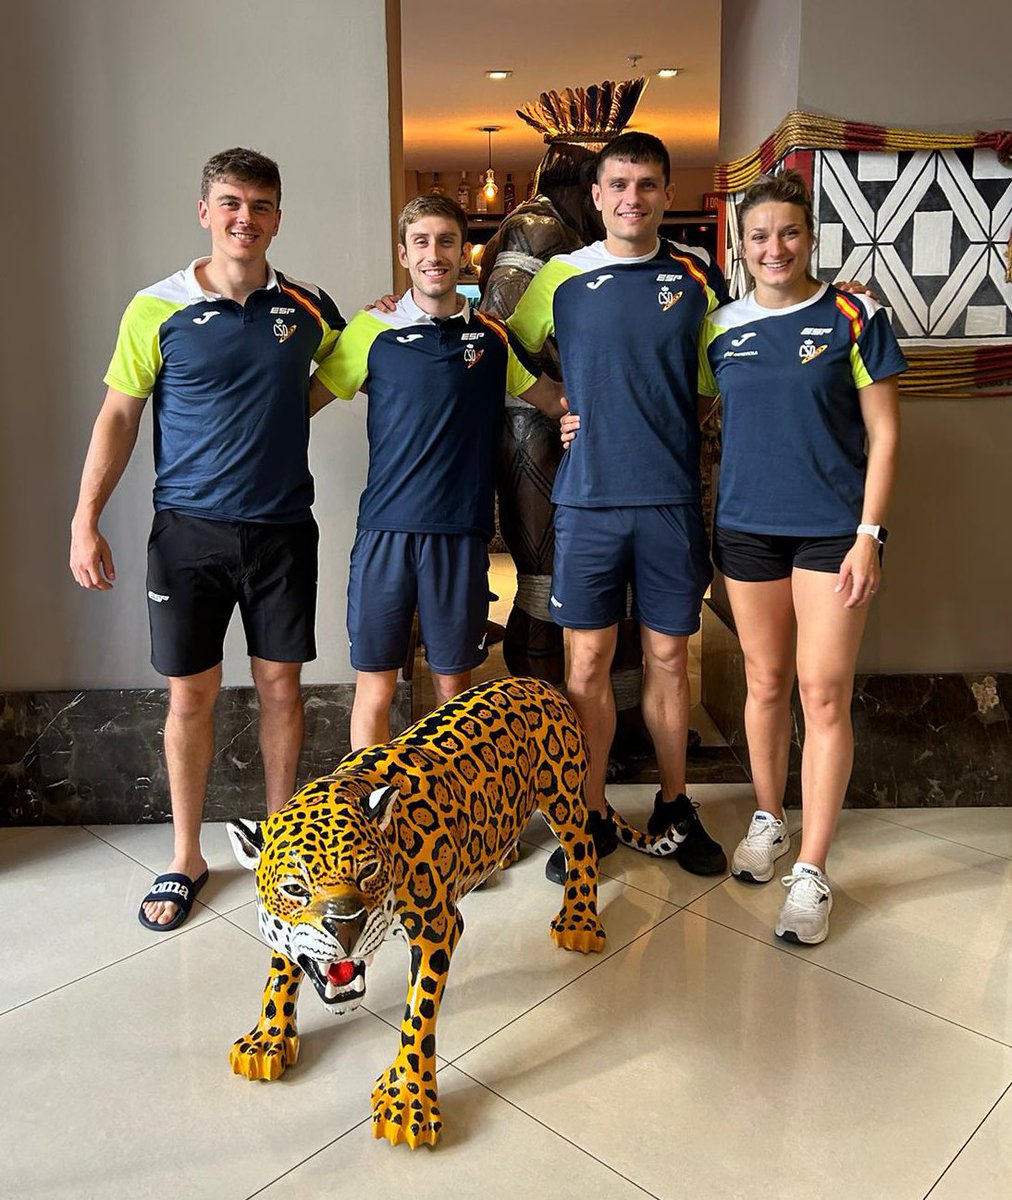 👏🏽 Nuestros cuatro tigres preparados para el Campeonato Iberoamericano con @atletismoRFEA 😊 • Manu Quijera • Álvaro López • Iker Alfonso • Arantza Moreno • 💛💚 #SoñemosSinLimites